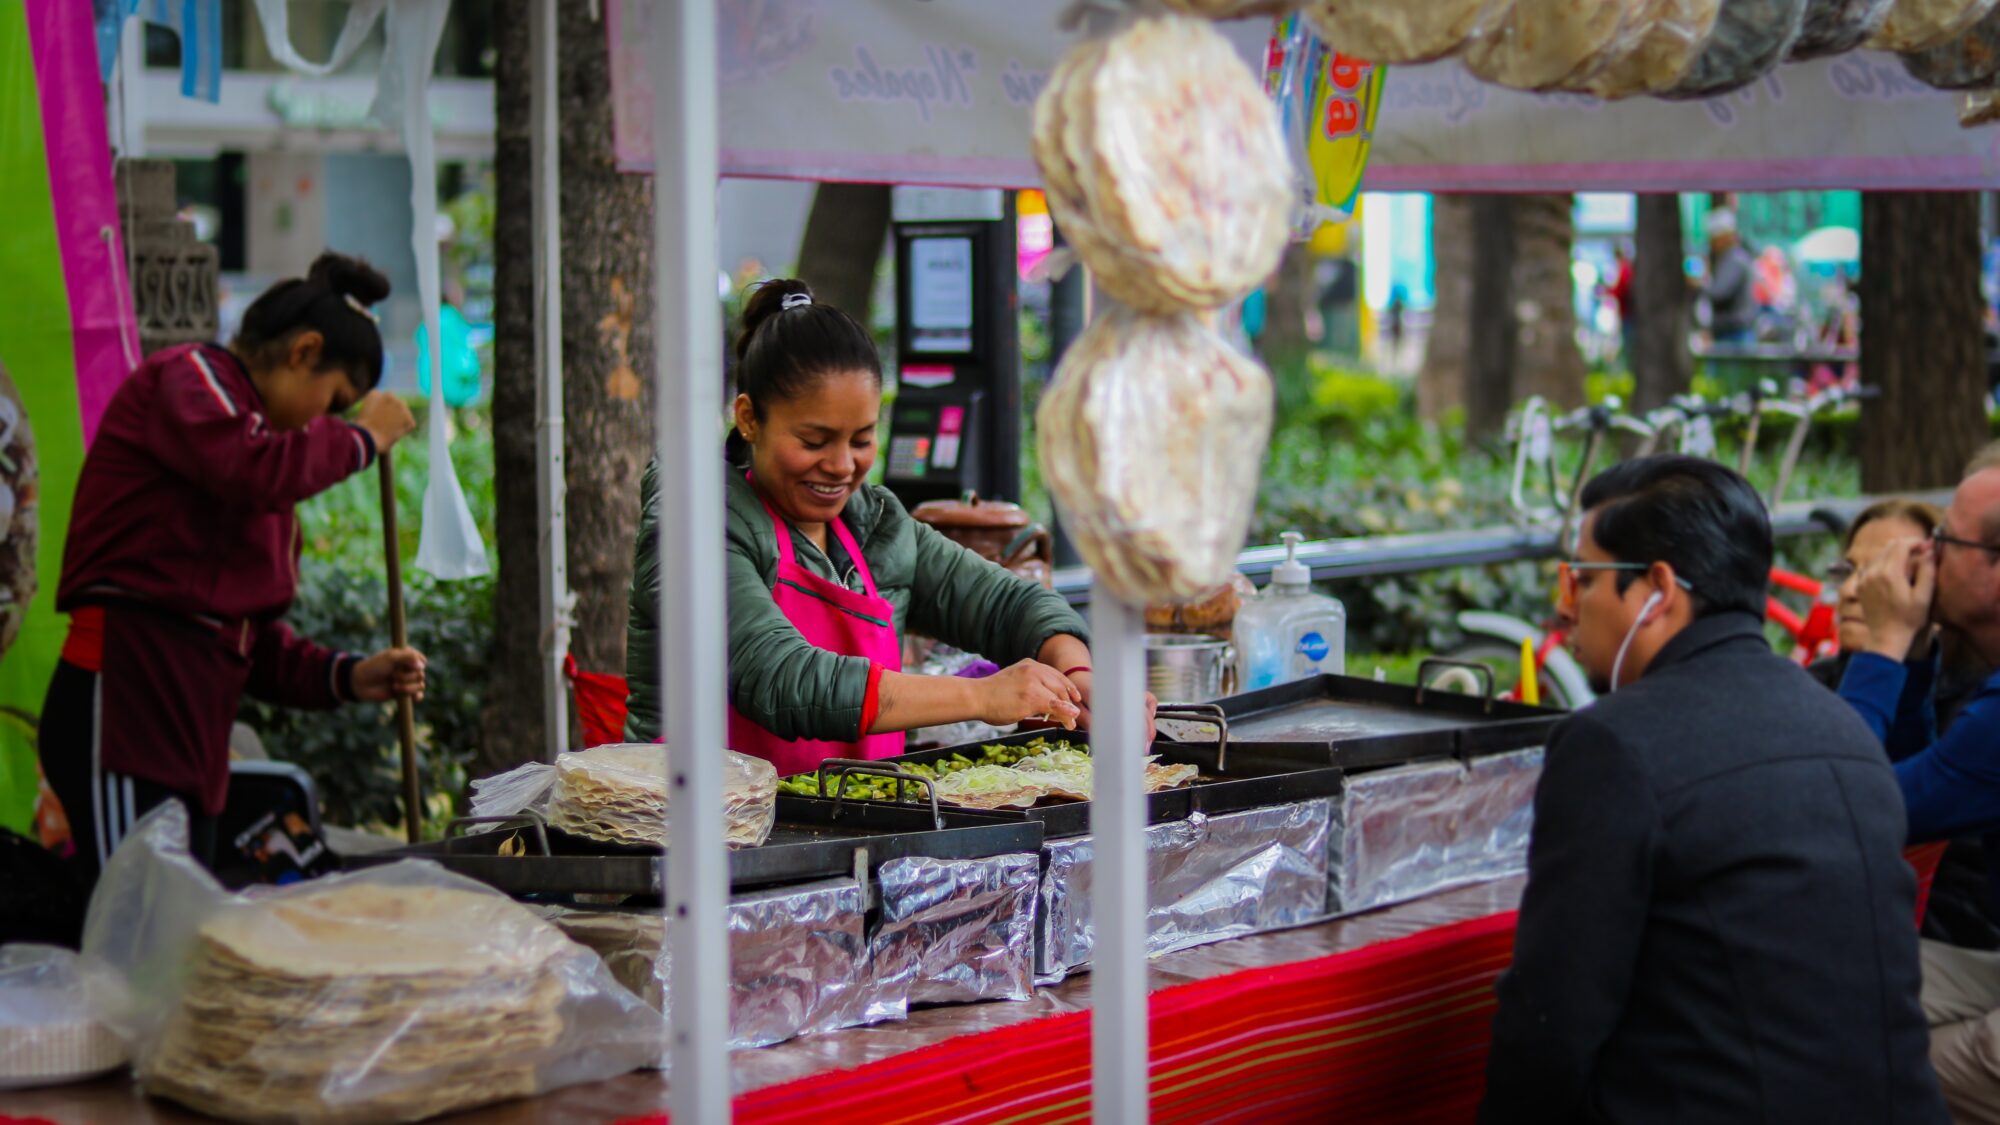 Emprendimientos gastronómicos migrantes: un aporte al desarrollo sostenible local